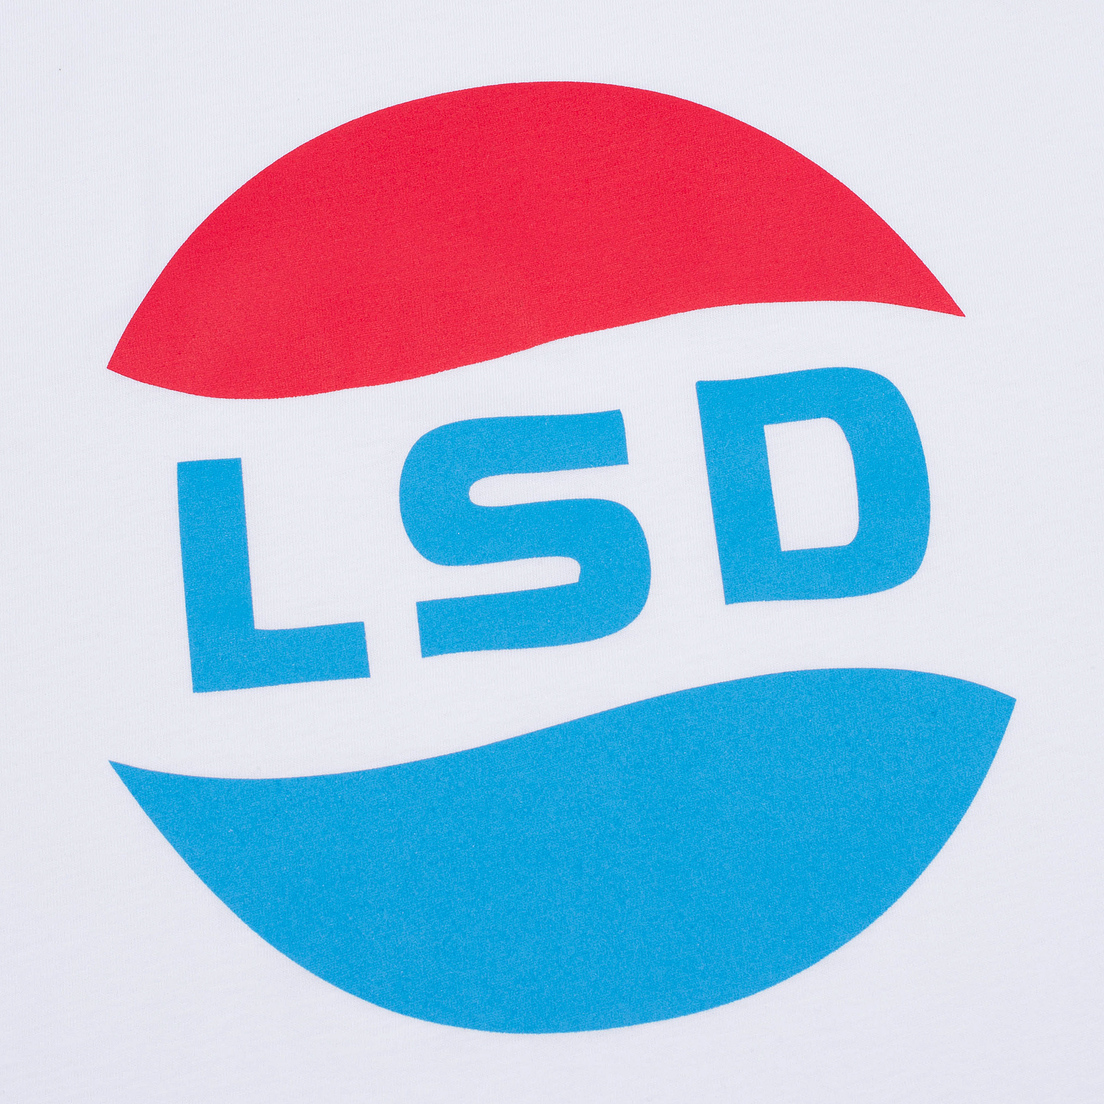 TSPTR Мужская футболка LSD Print